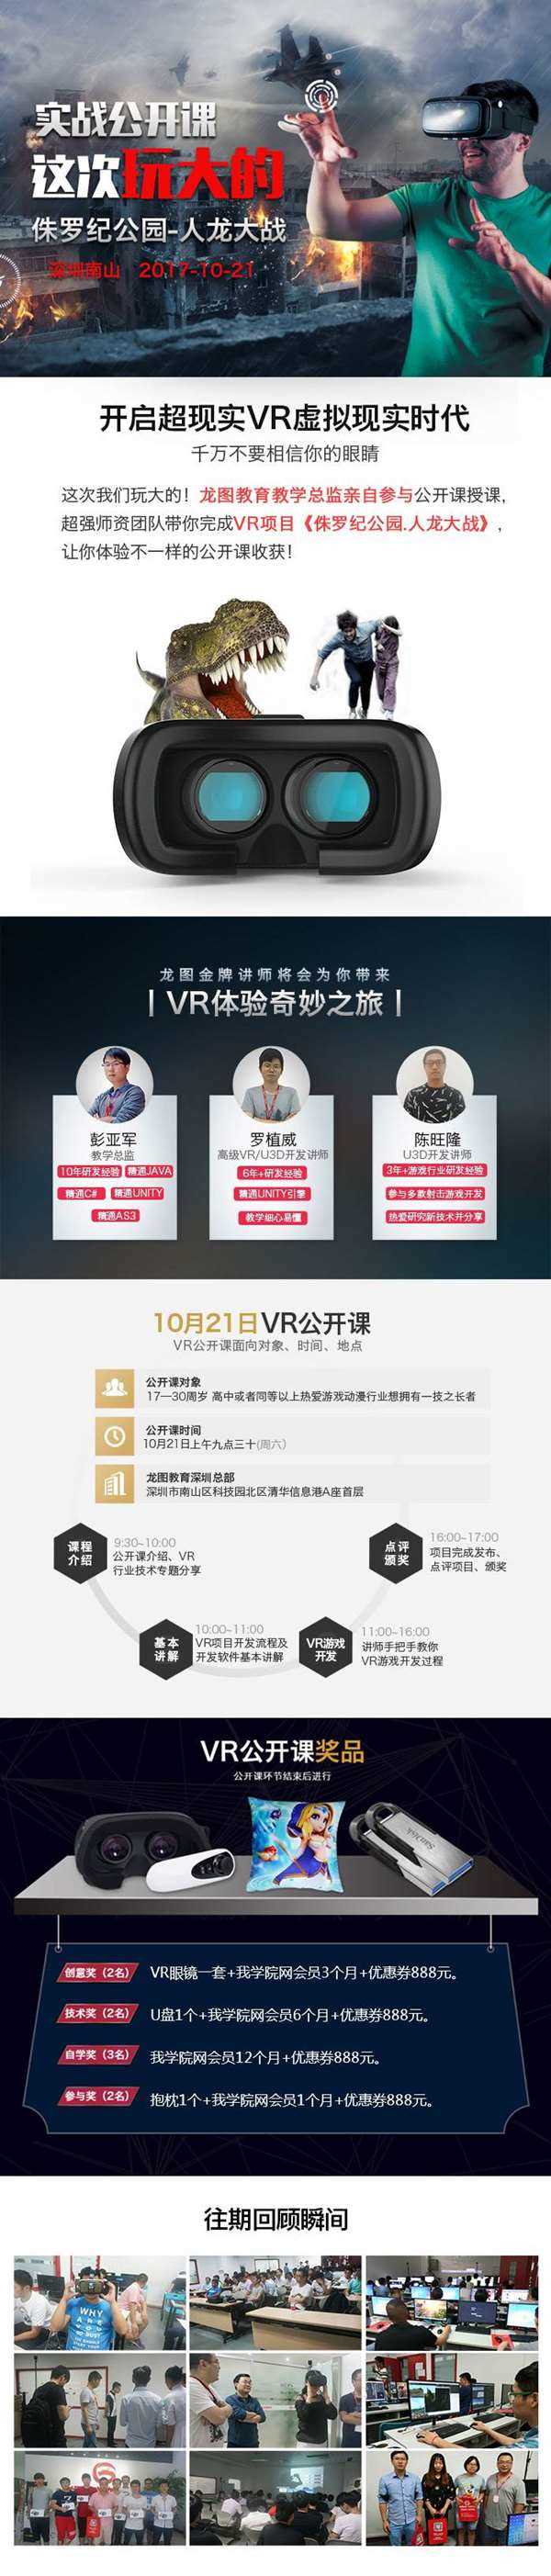 龙图教育深圳南山免费VR体验公开课.jpg